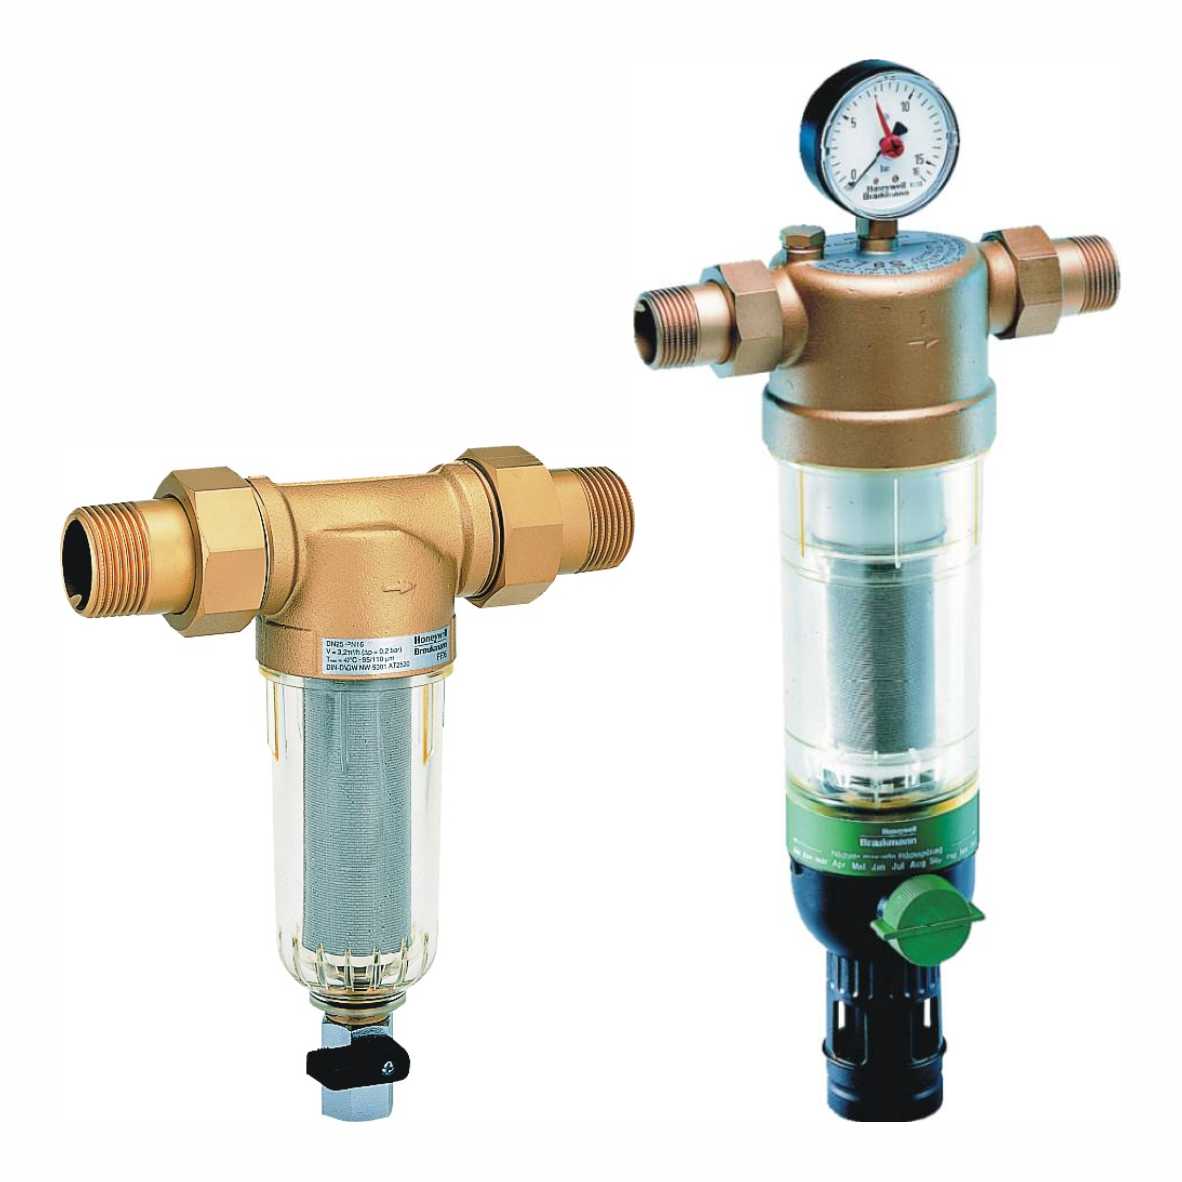 Установка фильтров на воду: подключение фильтра для очистки воды, монтаж водяного фильтра, как установить, подключить к водопроводу